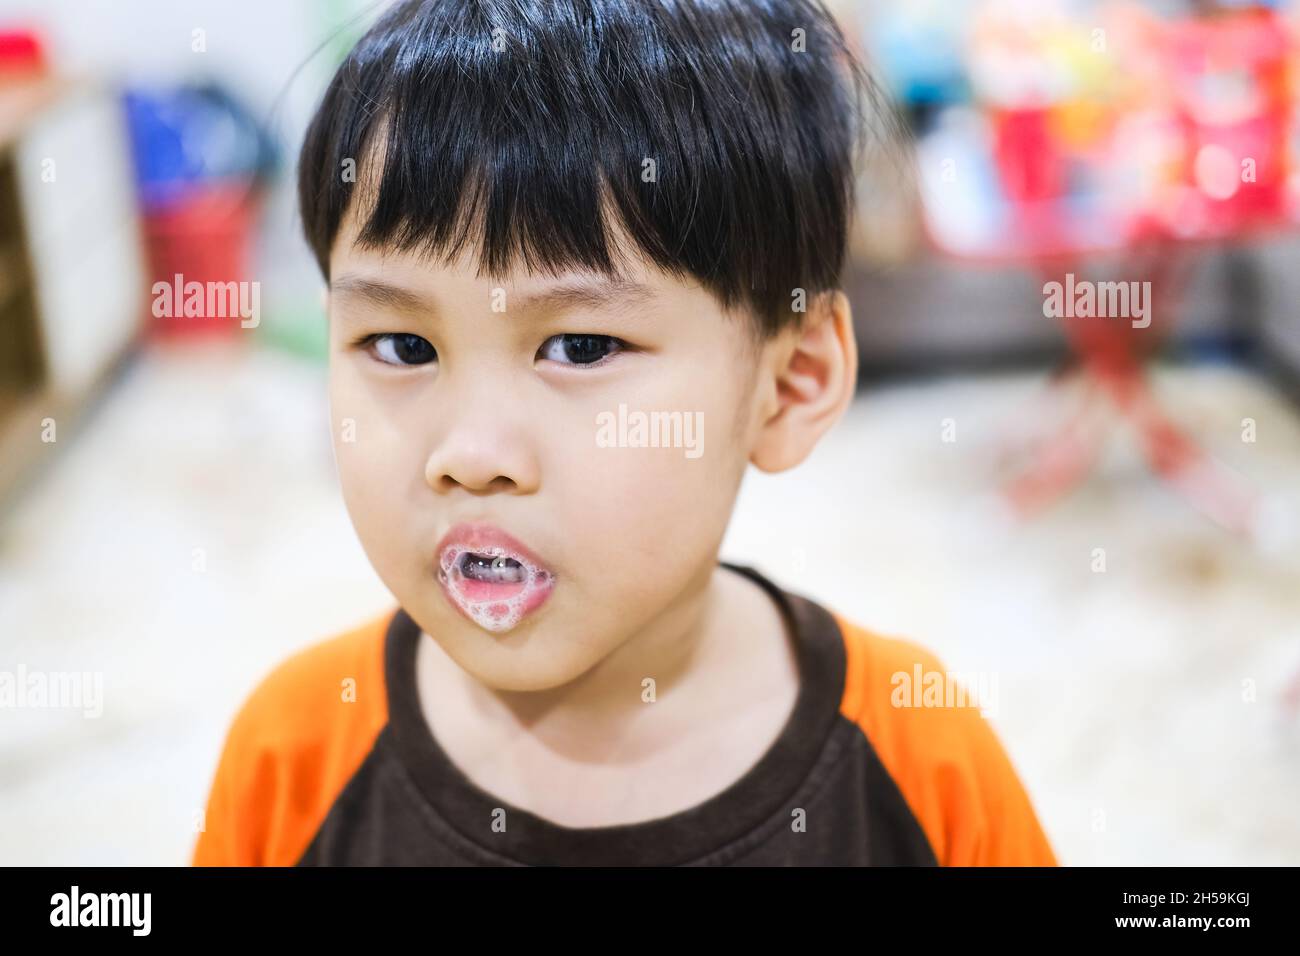 Ein kleines Kind genießt den Schaum des Speichels, der aus seinem Mund spuckt. Stockfoto